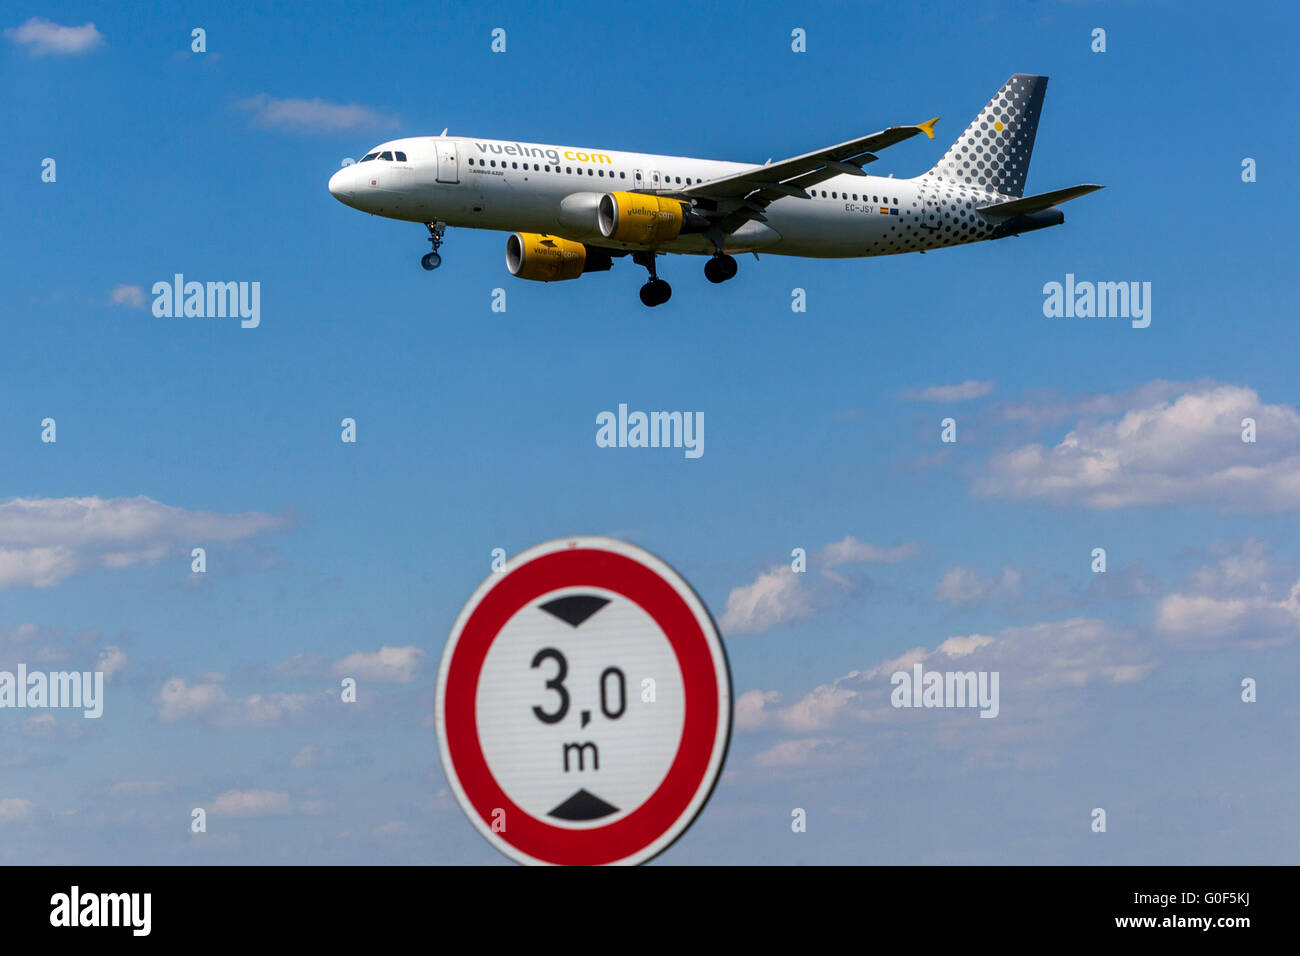 Avion Airbus A320 Vueling Approche pour un atterrissage, Prague, République Tchèque Banque D'Images